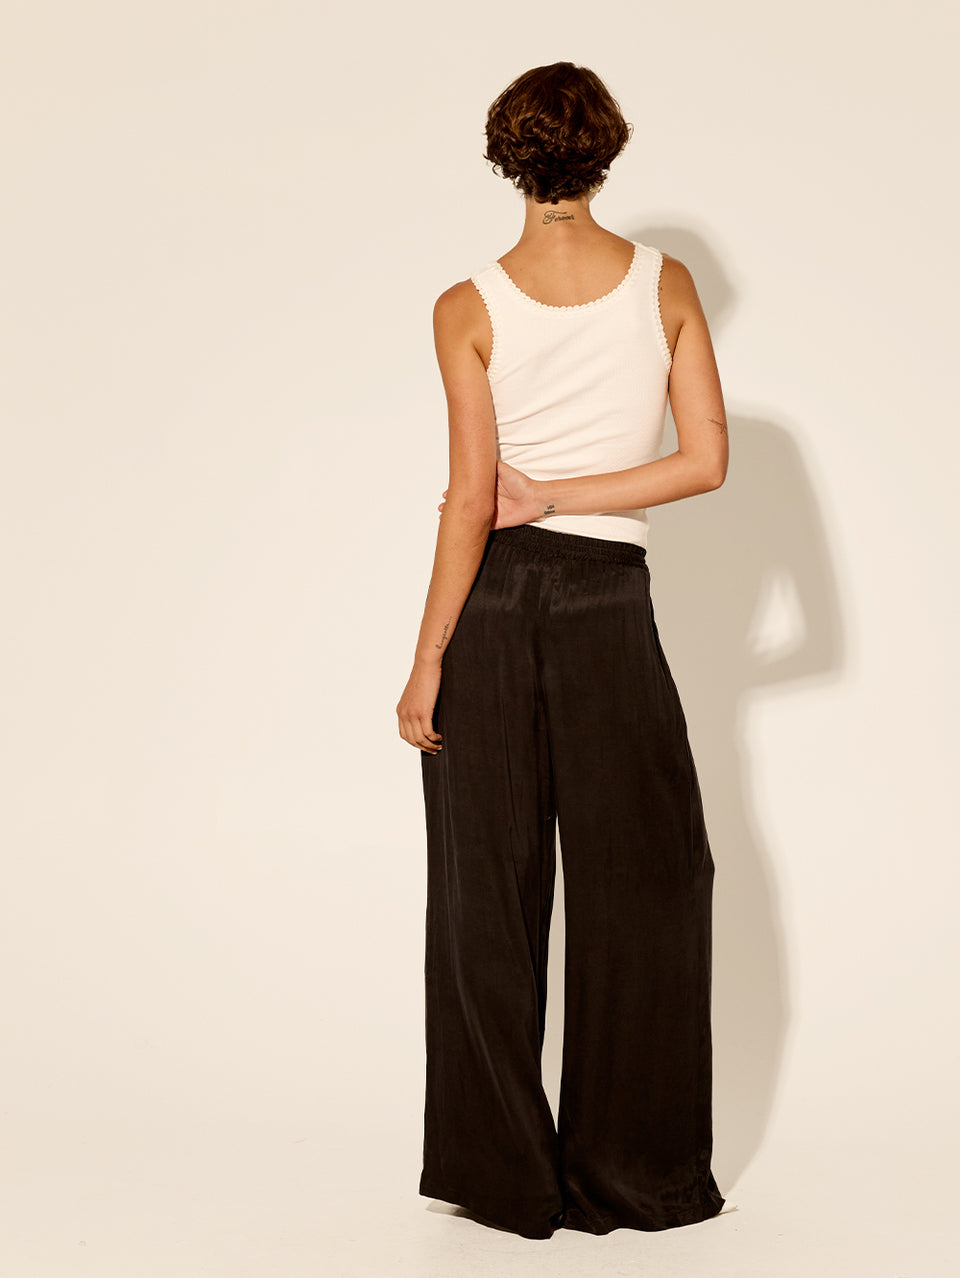 Women's Pants & Jeans: Linen, Corduroy & Flare Pants